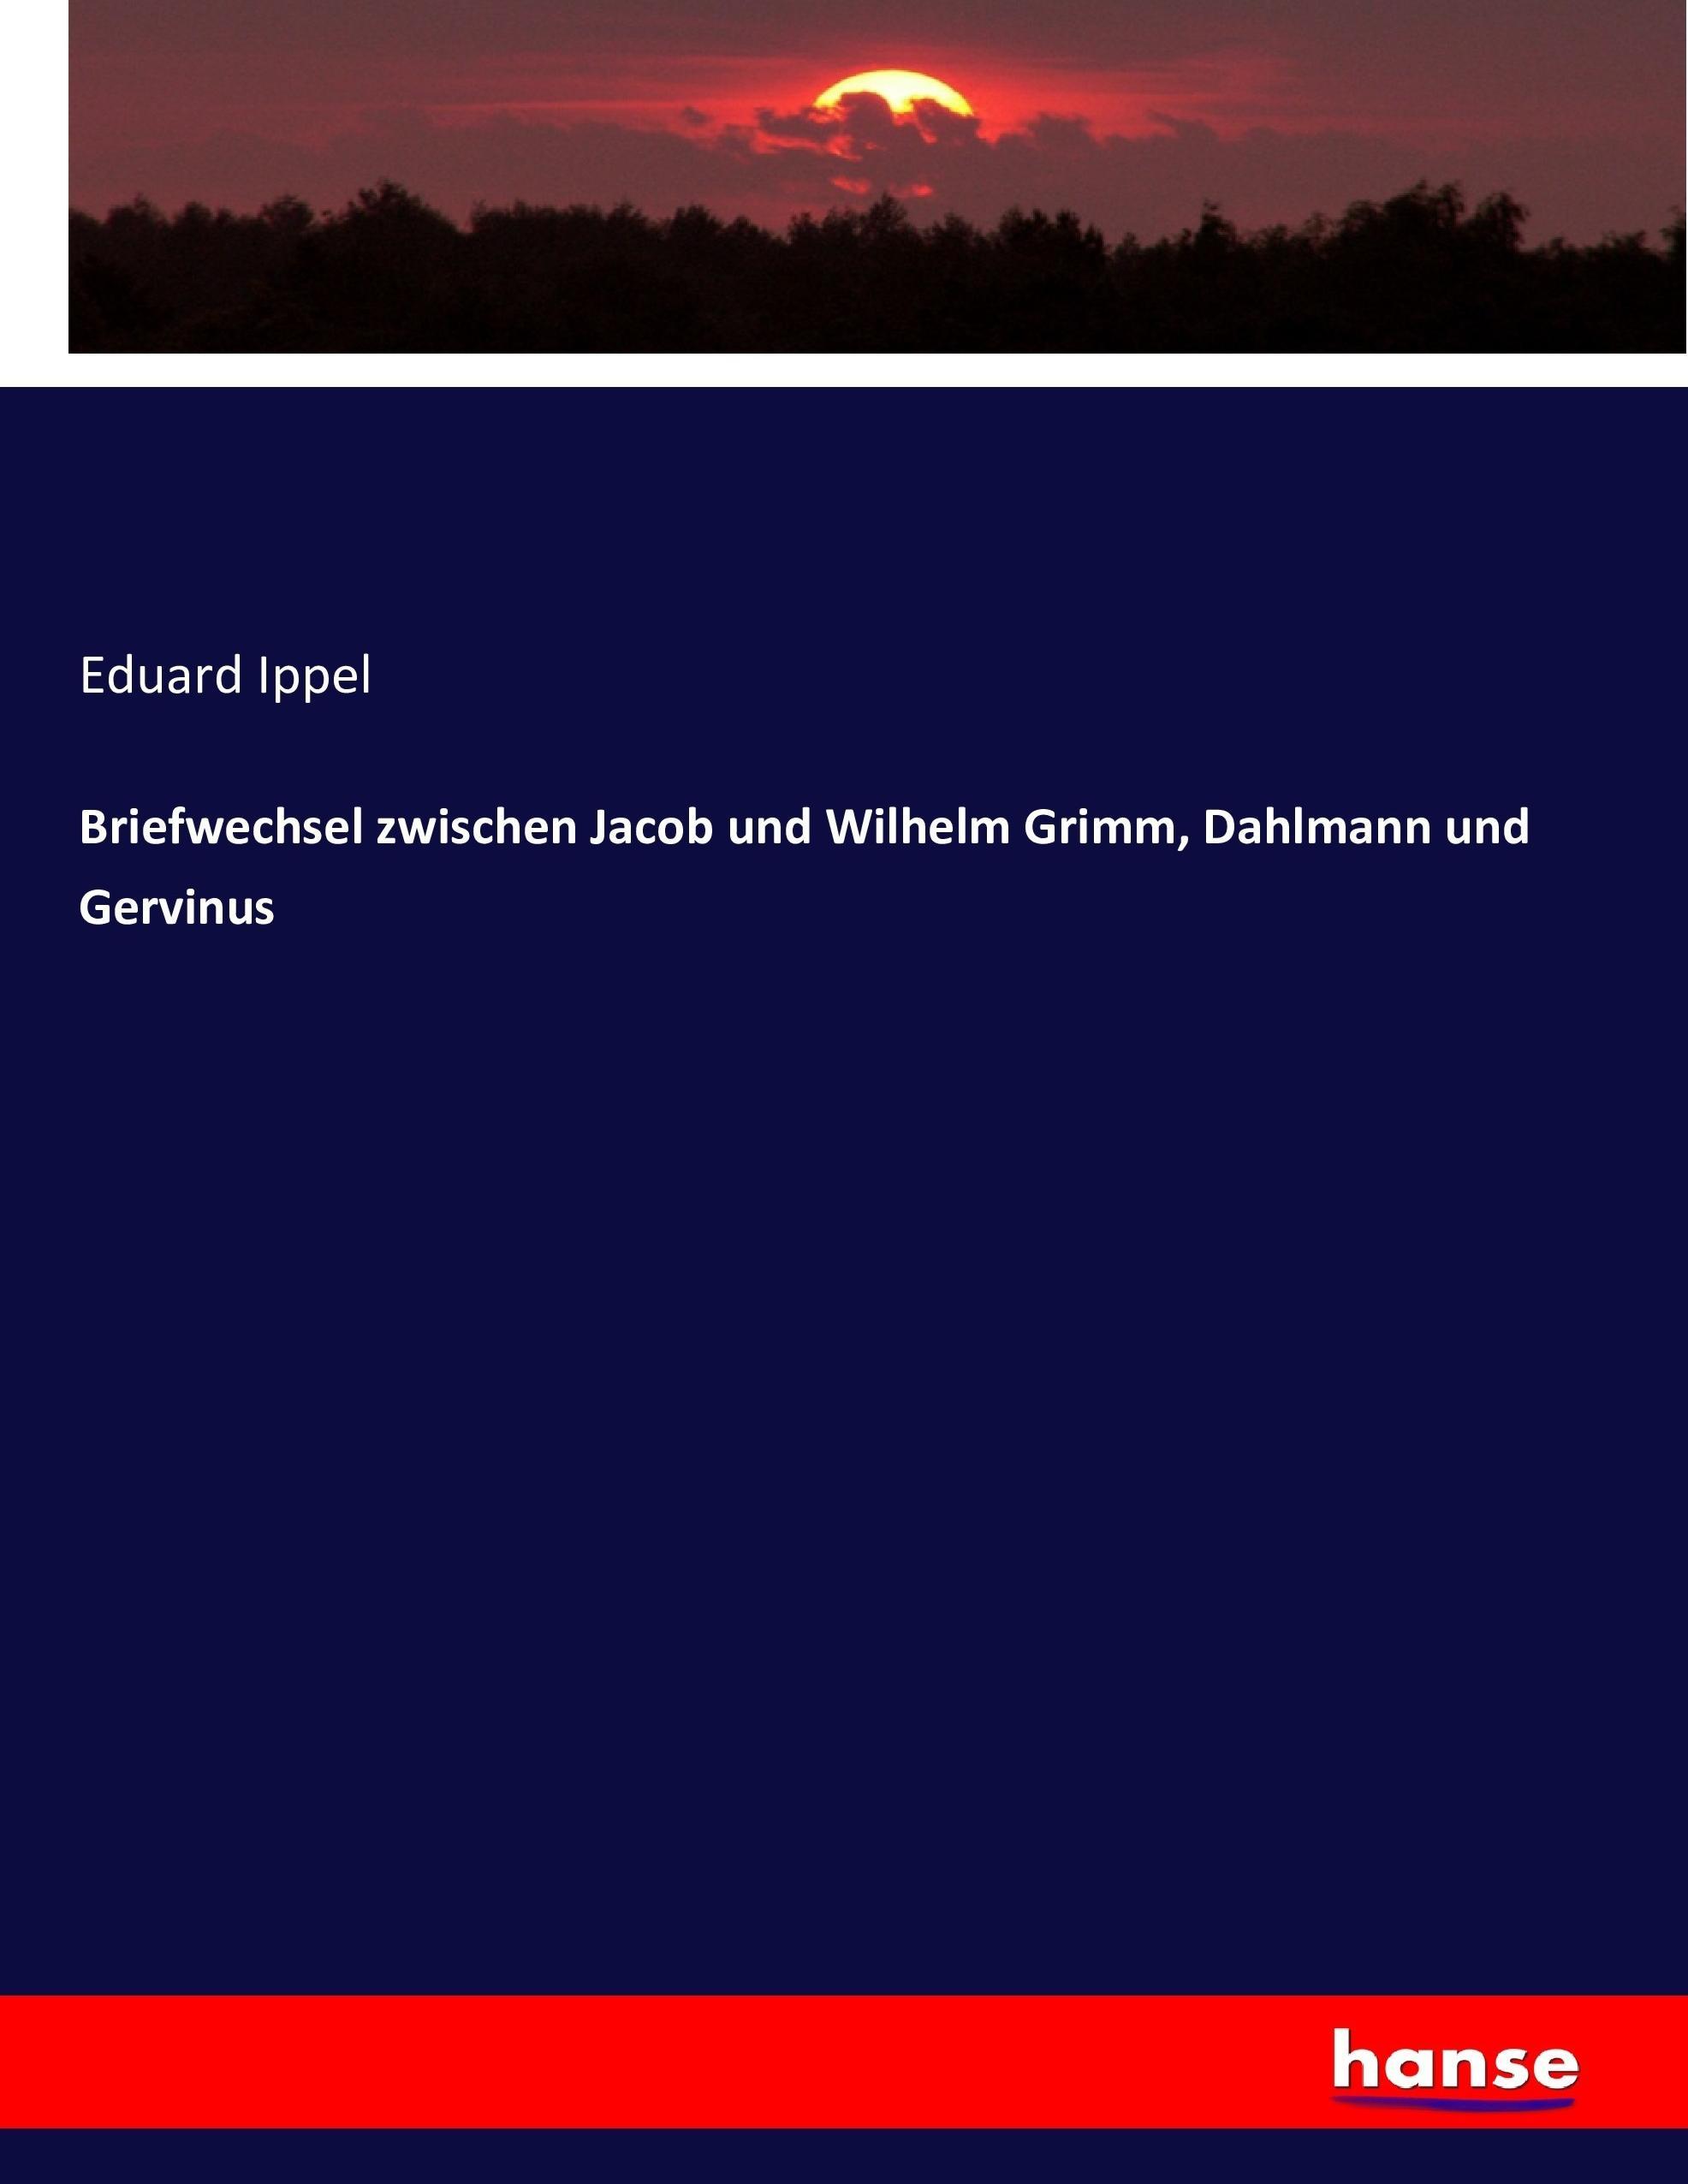 Briefwechsel zwischen Jacob und Wilhelm Grimm, Dahlmann und Gervinus - Ippel, Eduard